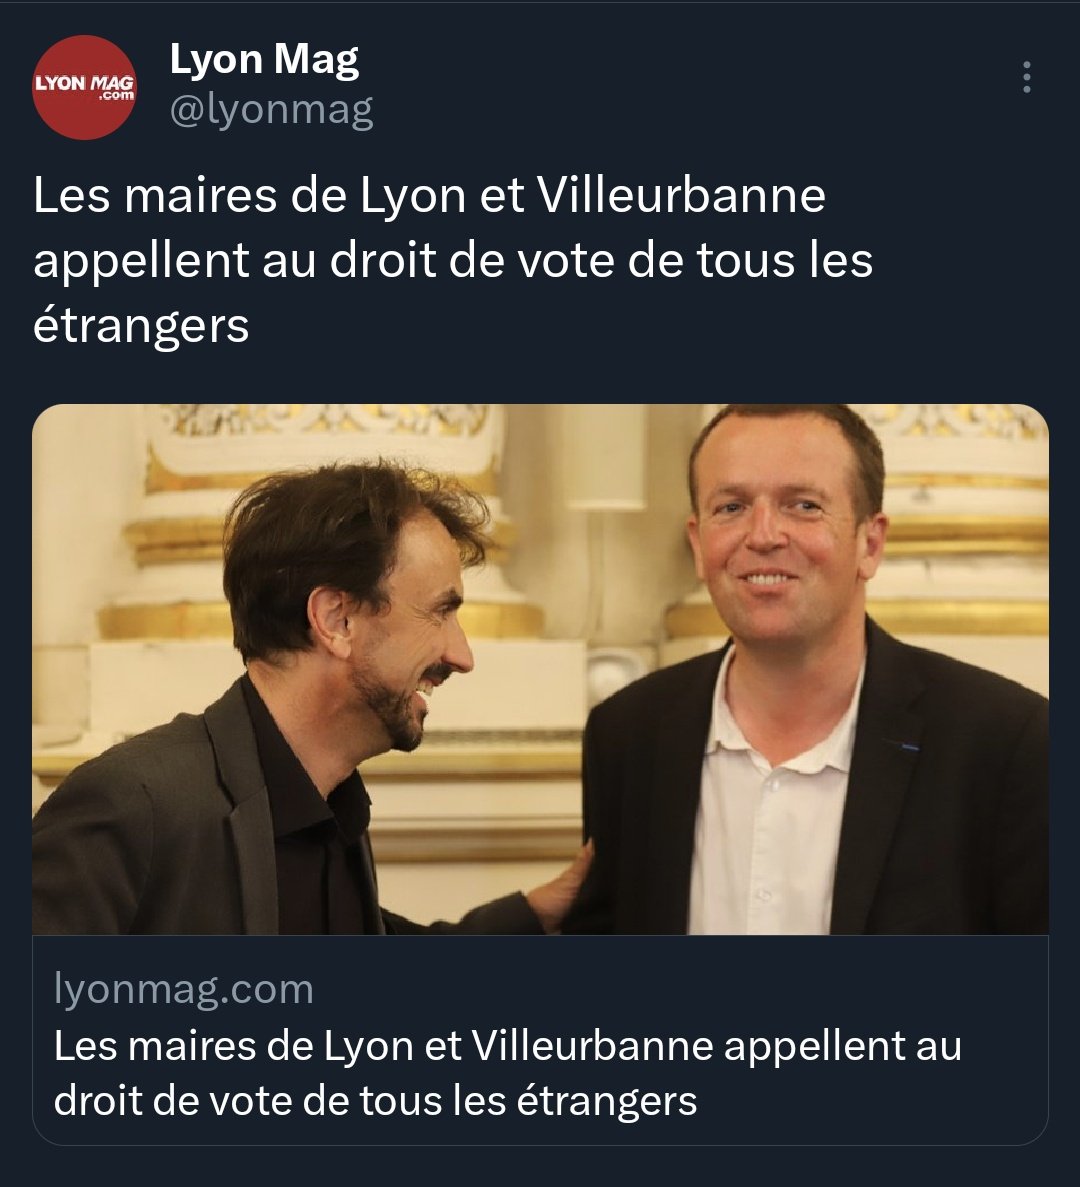 Ces idéologues incapables qui ont transformé une des plus belles villes de France en trou à merde invivable, criminogène et non circulable, viennent de trouver le seul moyen d'être réélus.
#Lyon #Villeurbanne